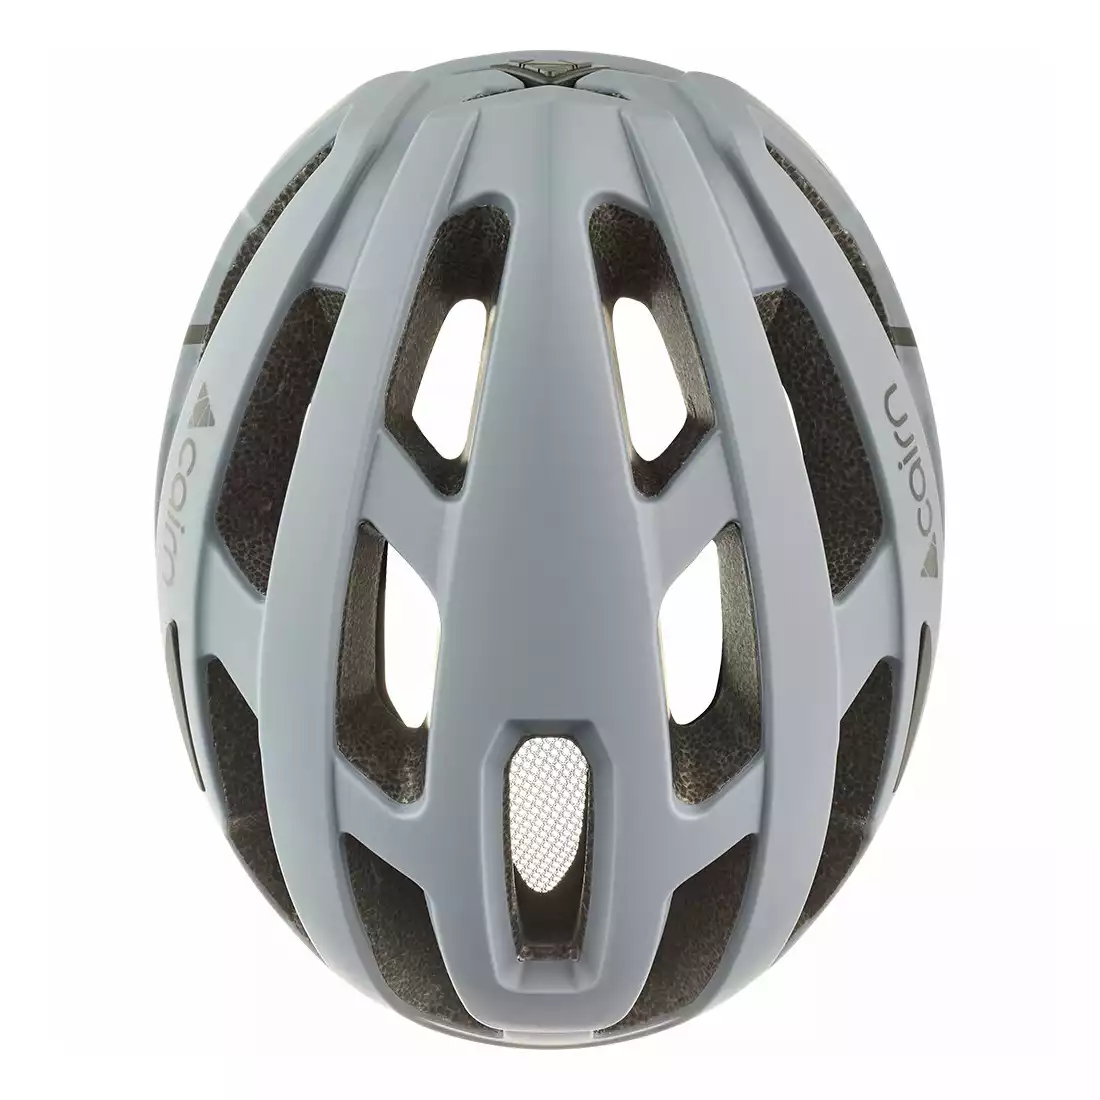 CAIRN PRISM II Bicycle helmet, gray